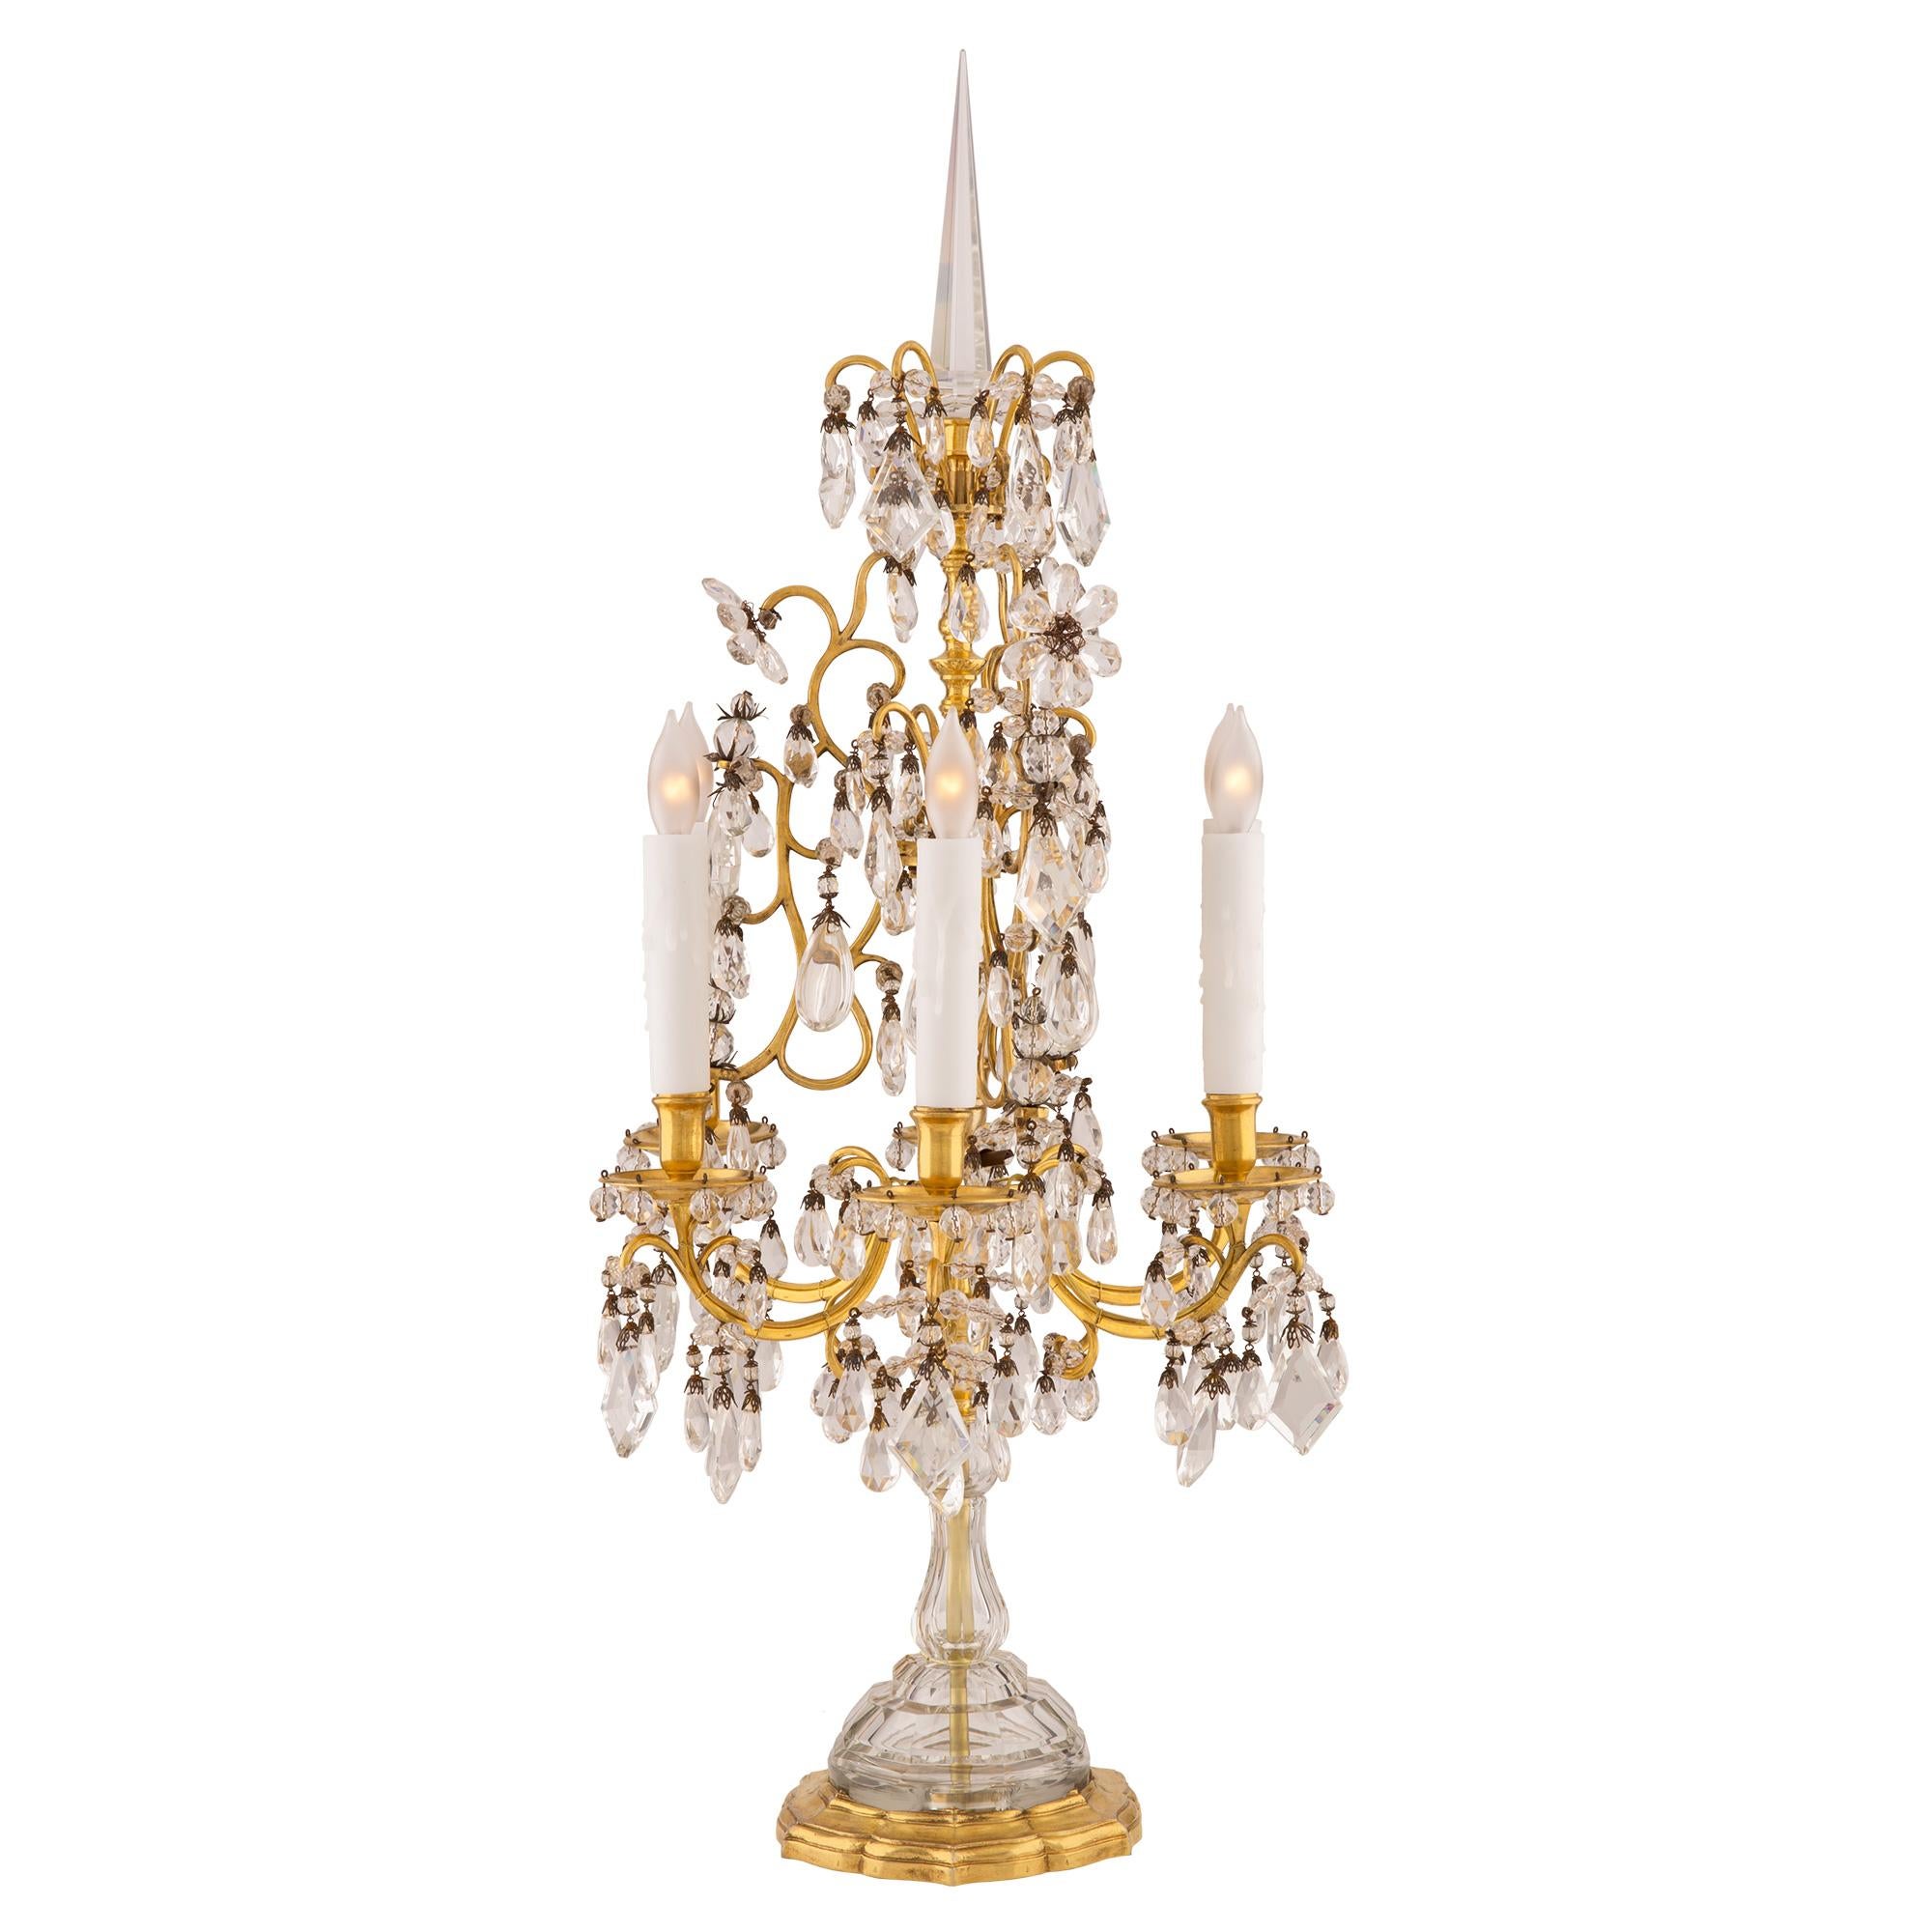 Ein bemerkenswertes und sehr hochwertiges Paar französischer Girandole-Lampen aus dem 19. Jahrhundert aus Louis XVI-Ormolu und Baccarat-Kristall. Jede Girandole wird von einem schönen, schalenförmigen Ormolu-Sockel mit feinem, gesprenkeltem Muster